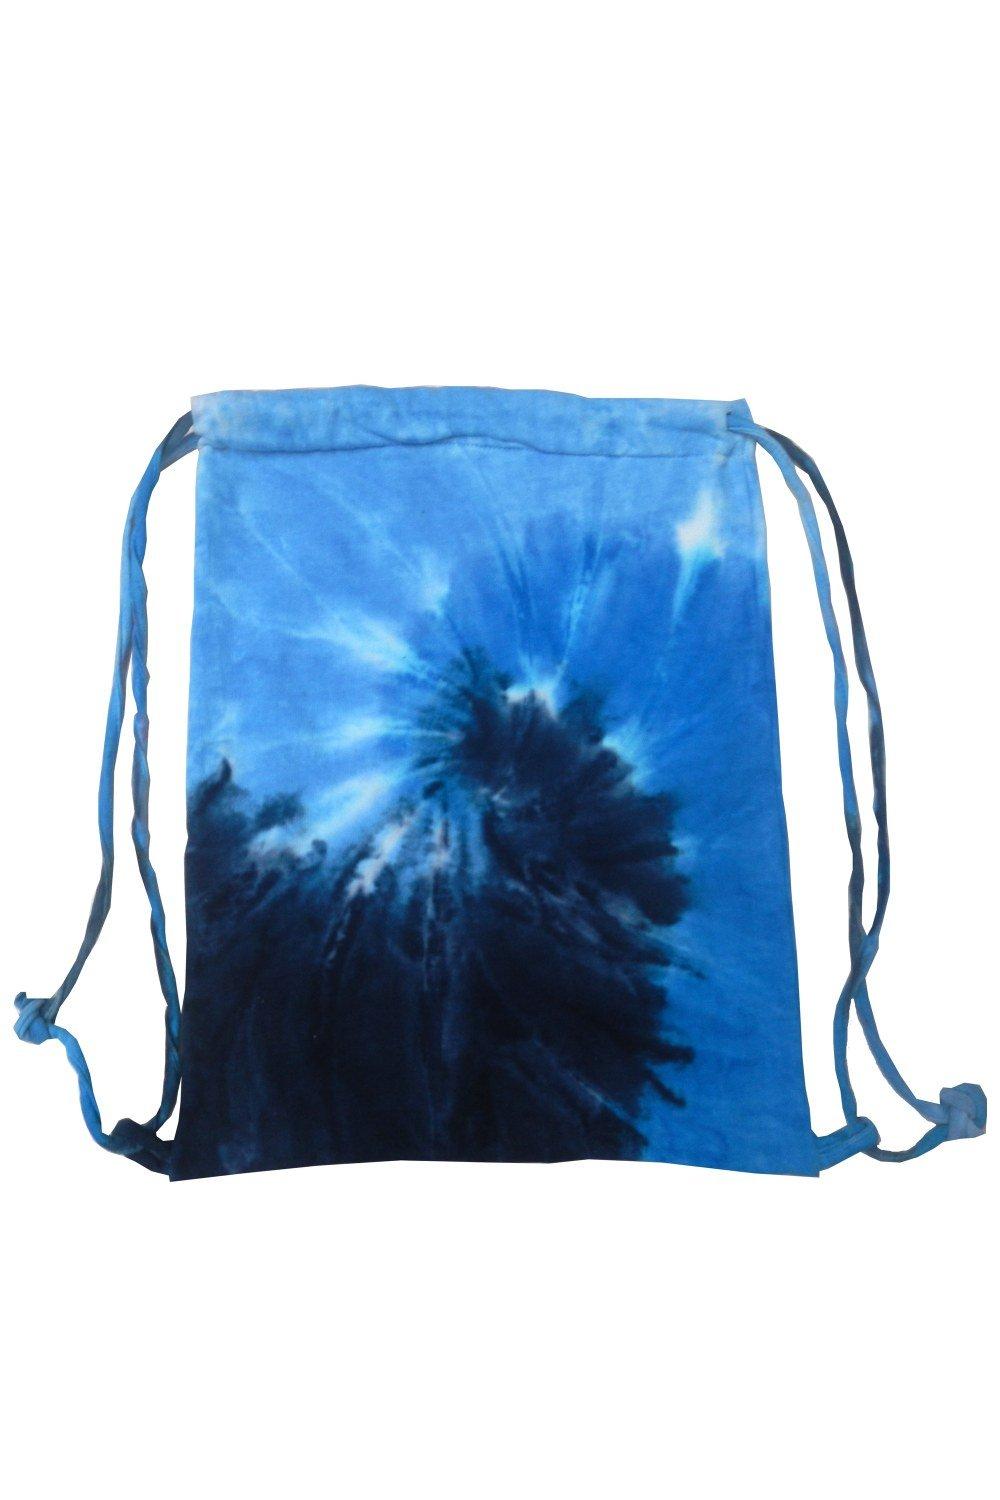 Спортивная большая сумка на шнуровке Tie Dye Colortone, синий легкий жесткий спиннер stratos 20 дюймов черная ручная сумка